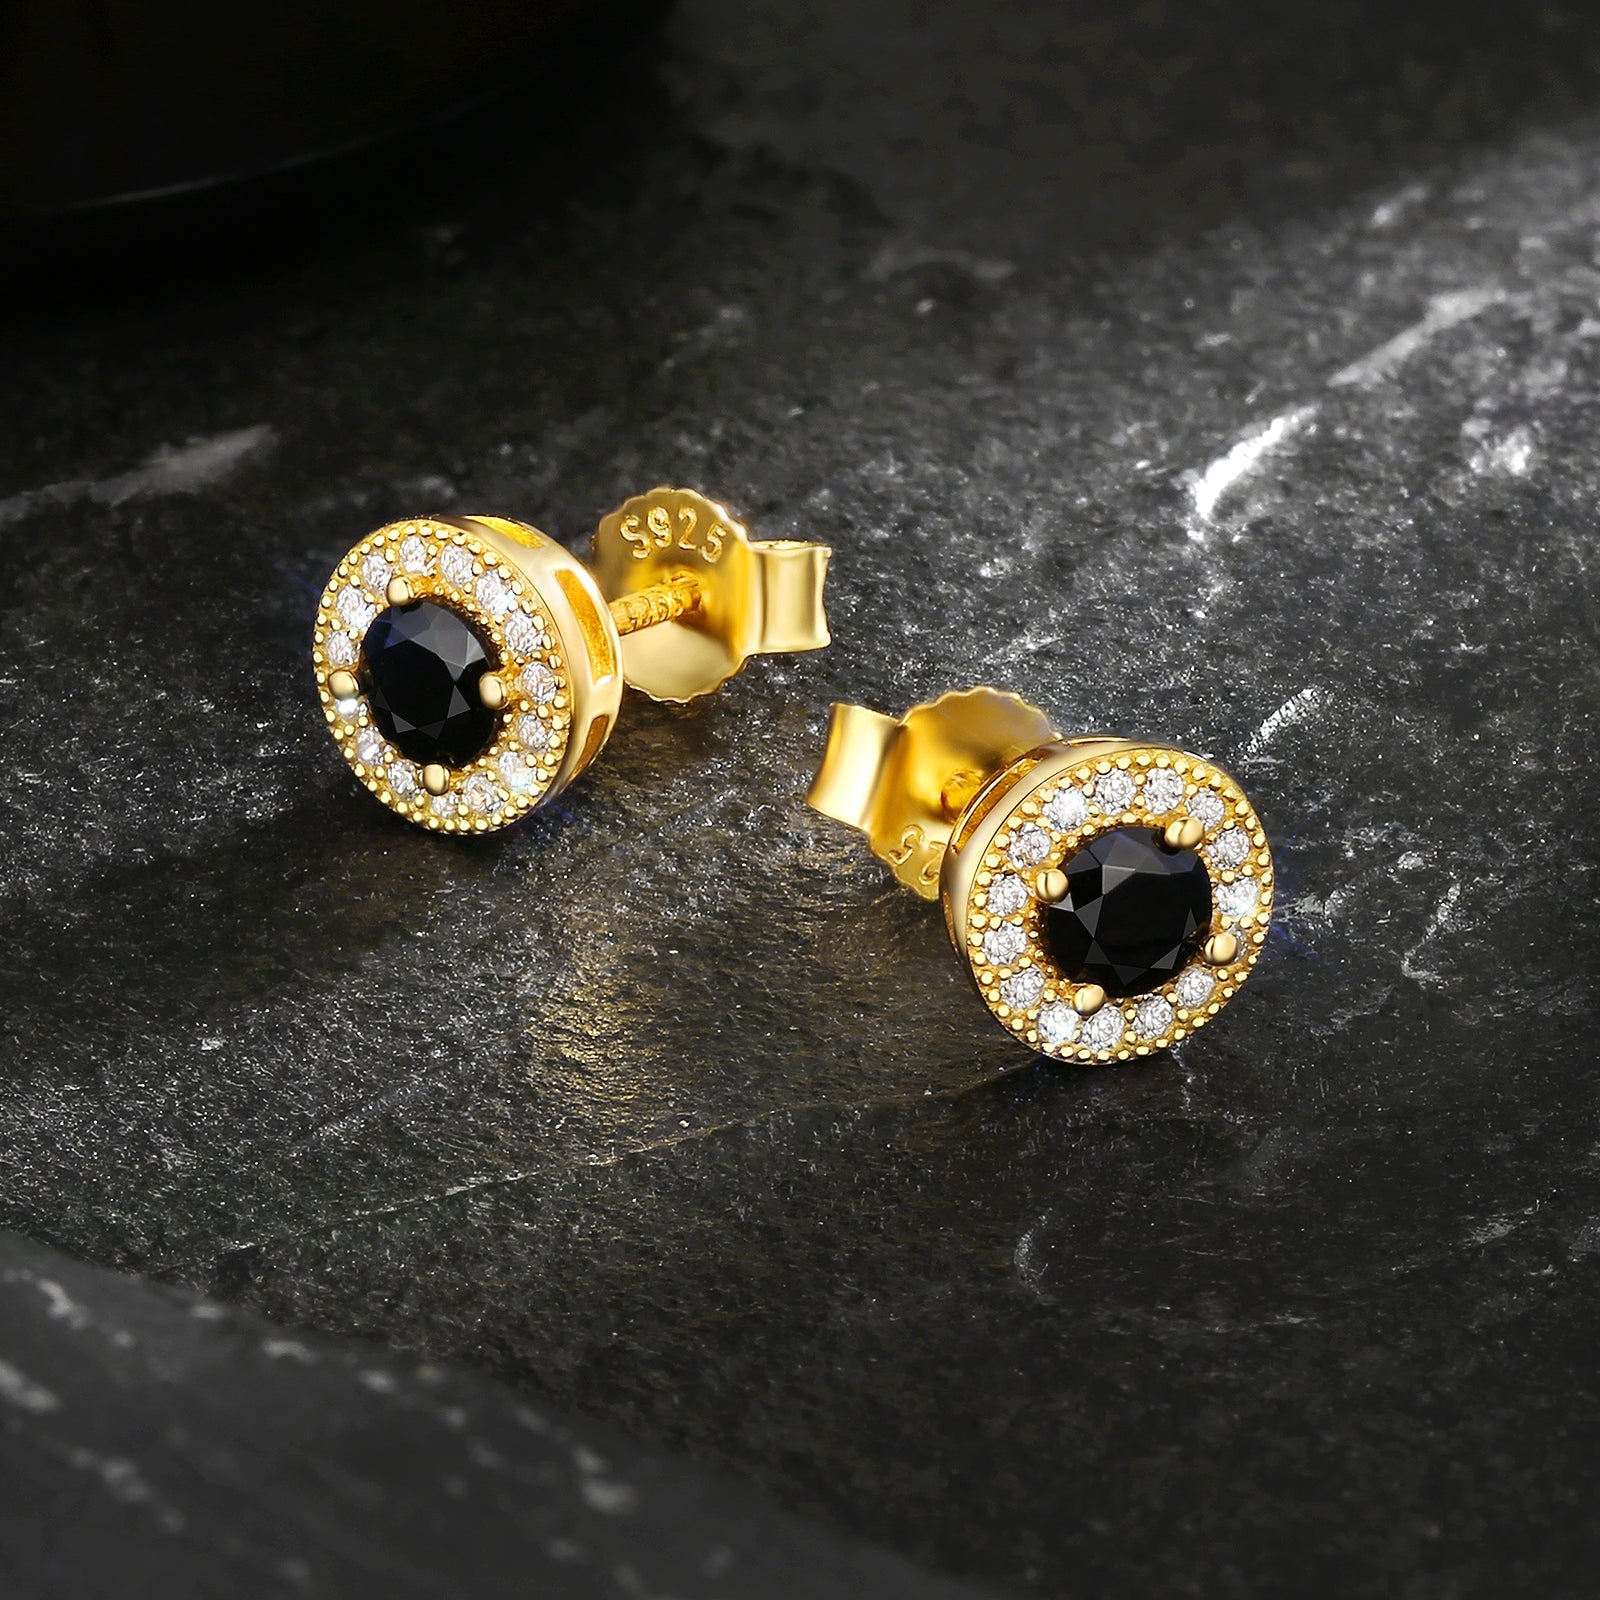 Wholesale Men's Earrings 7.5mm Black Round Iced Stud Earrings for Men